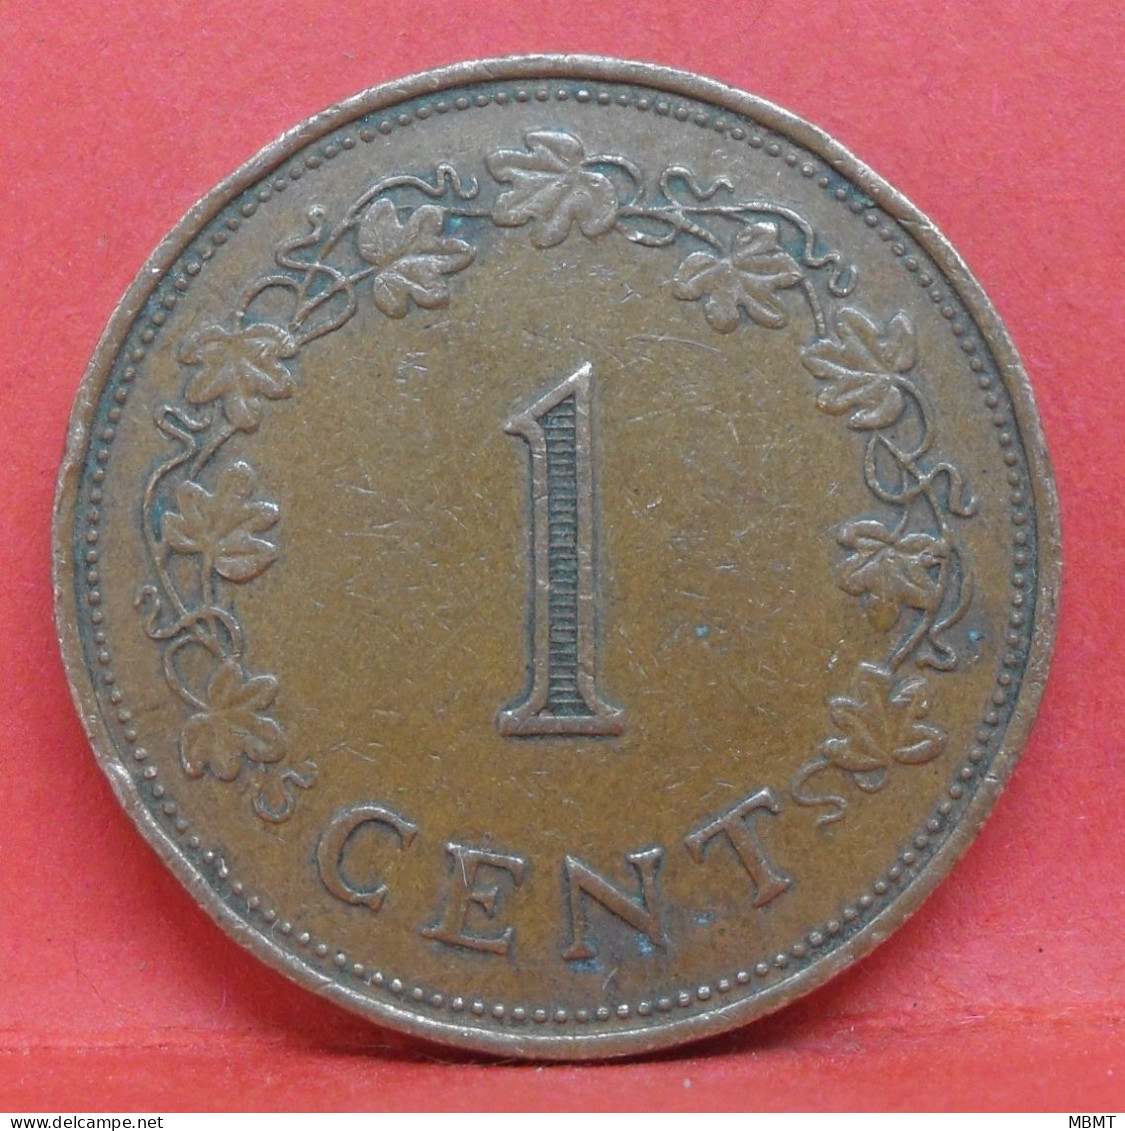 1 Cents 1972 - TTB - Pièce De Monnaie Malte - Article N°3675 - Malte